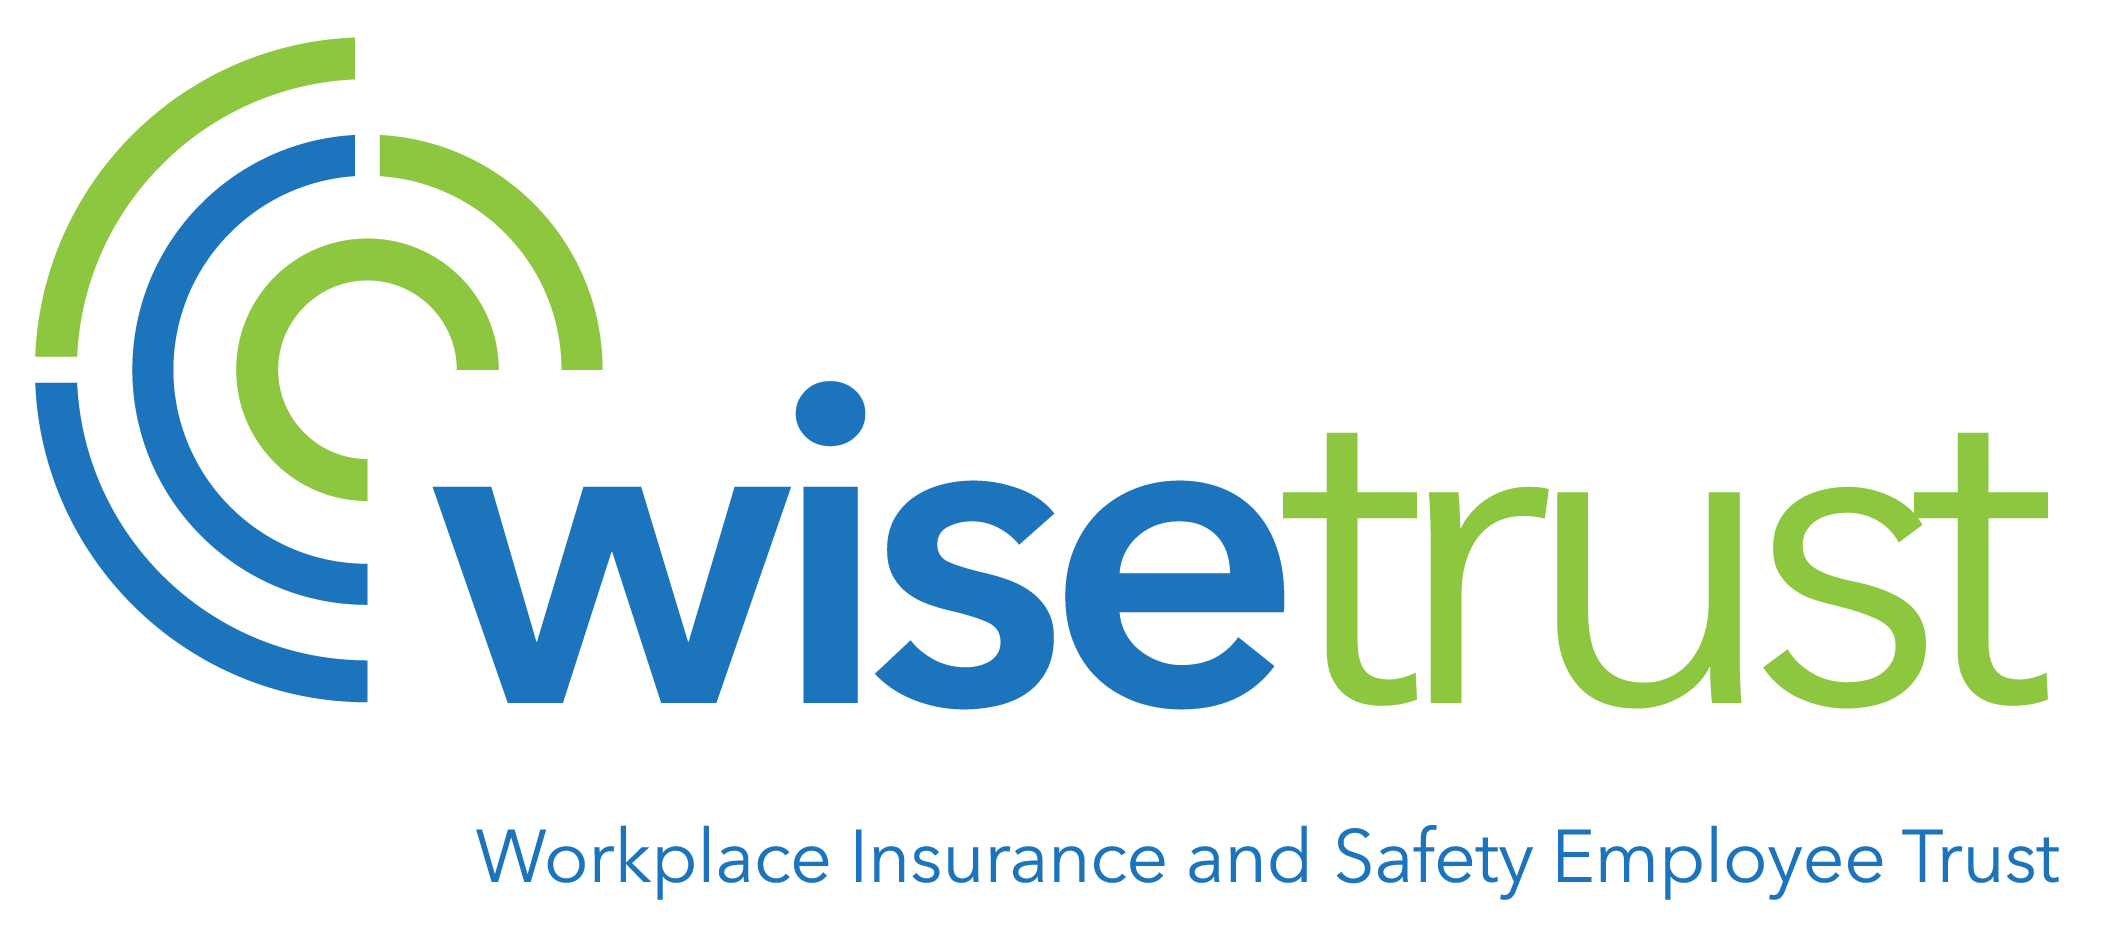 Wise trust logo